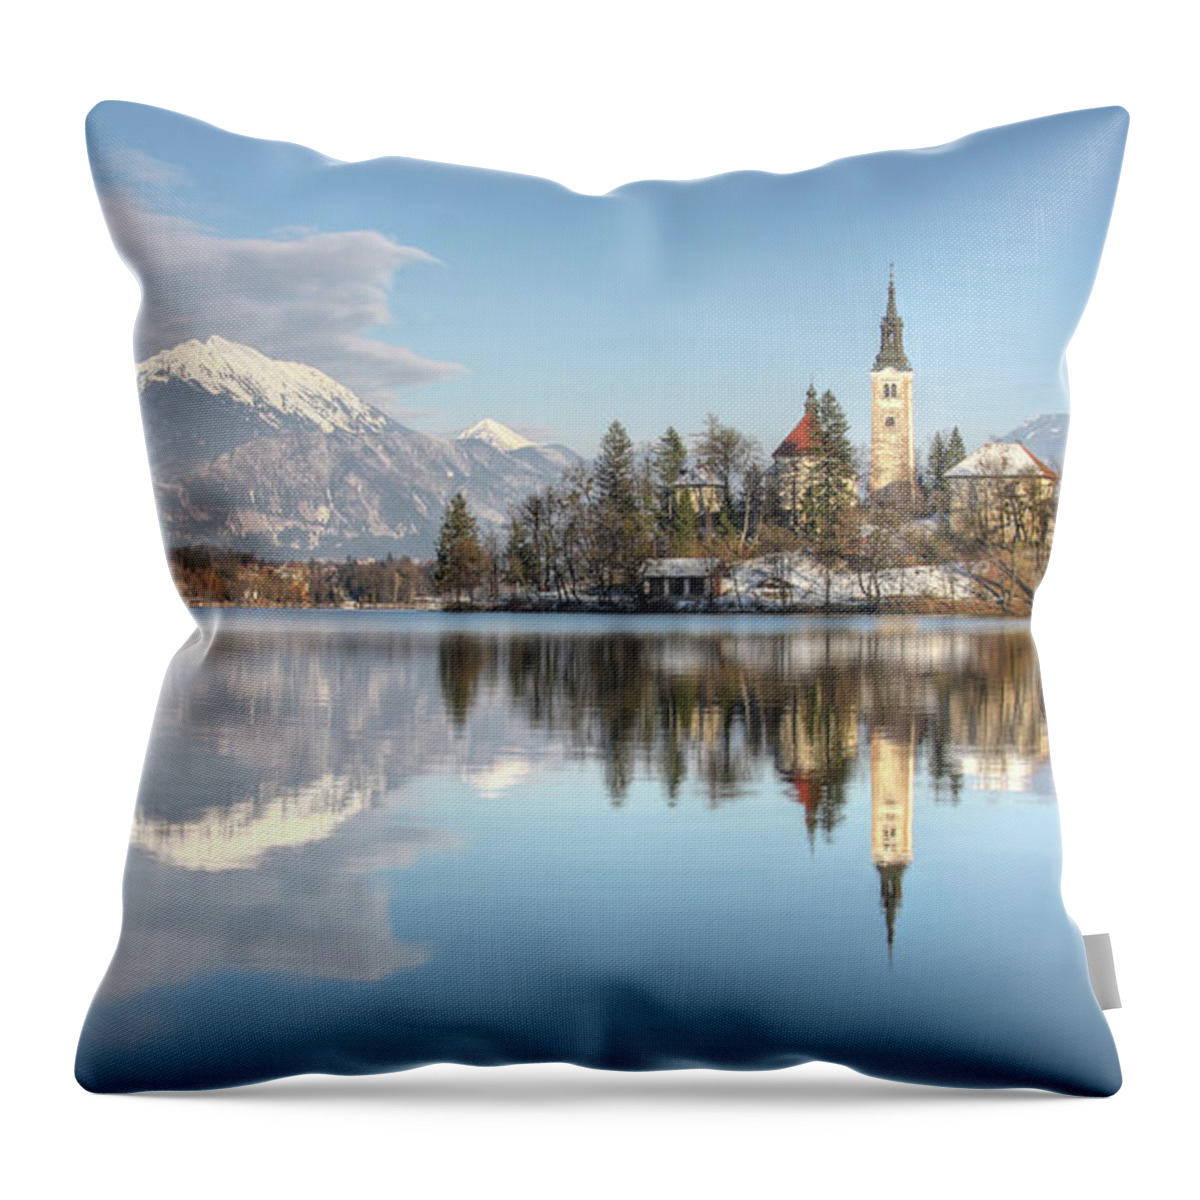 Santa Maria Church Throw Pillow featuring the photograph Bled Lake, Slovenia by Rinek